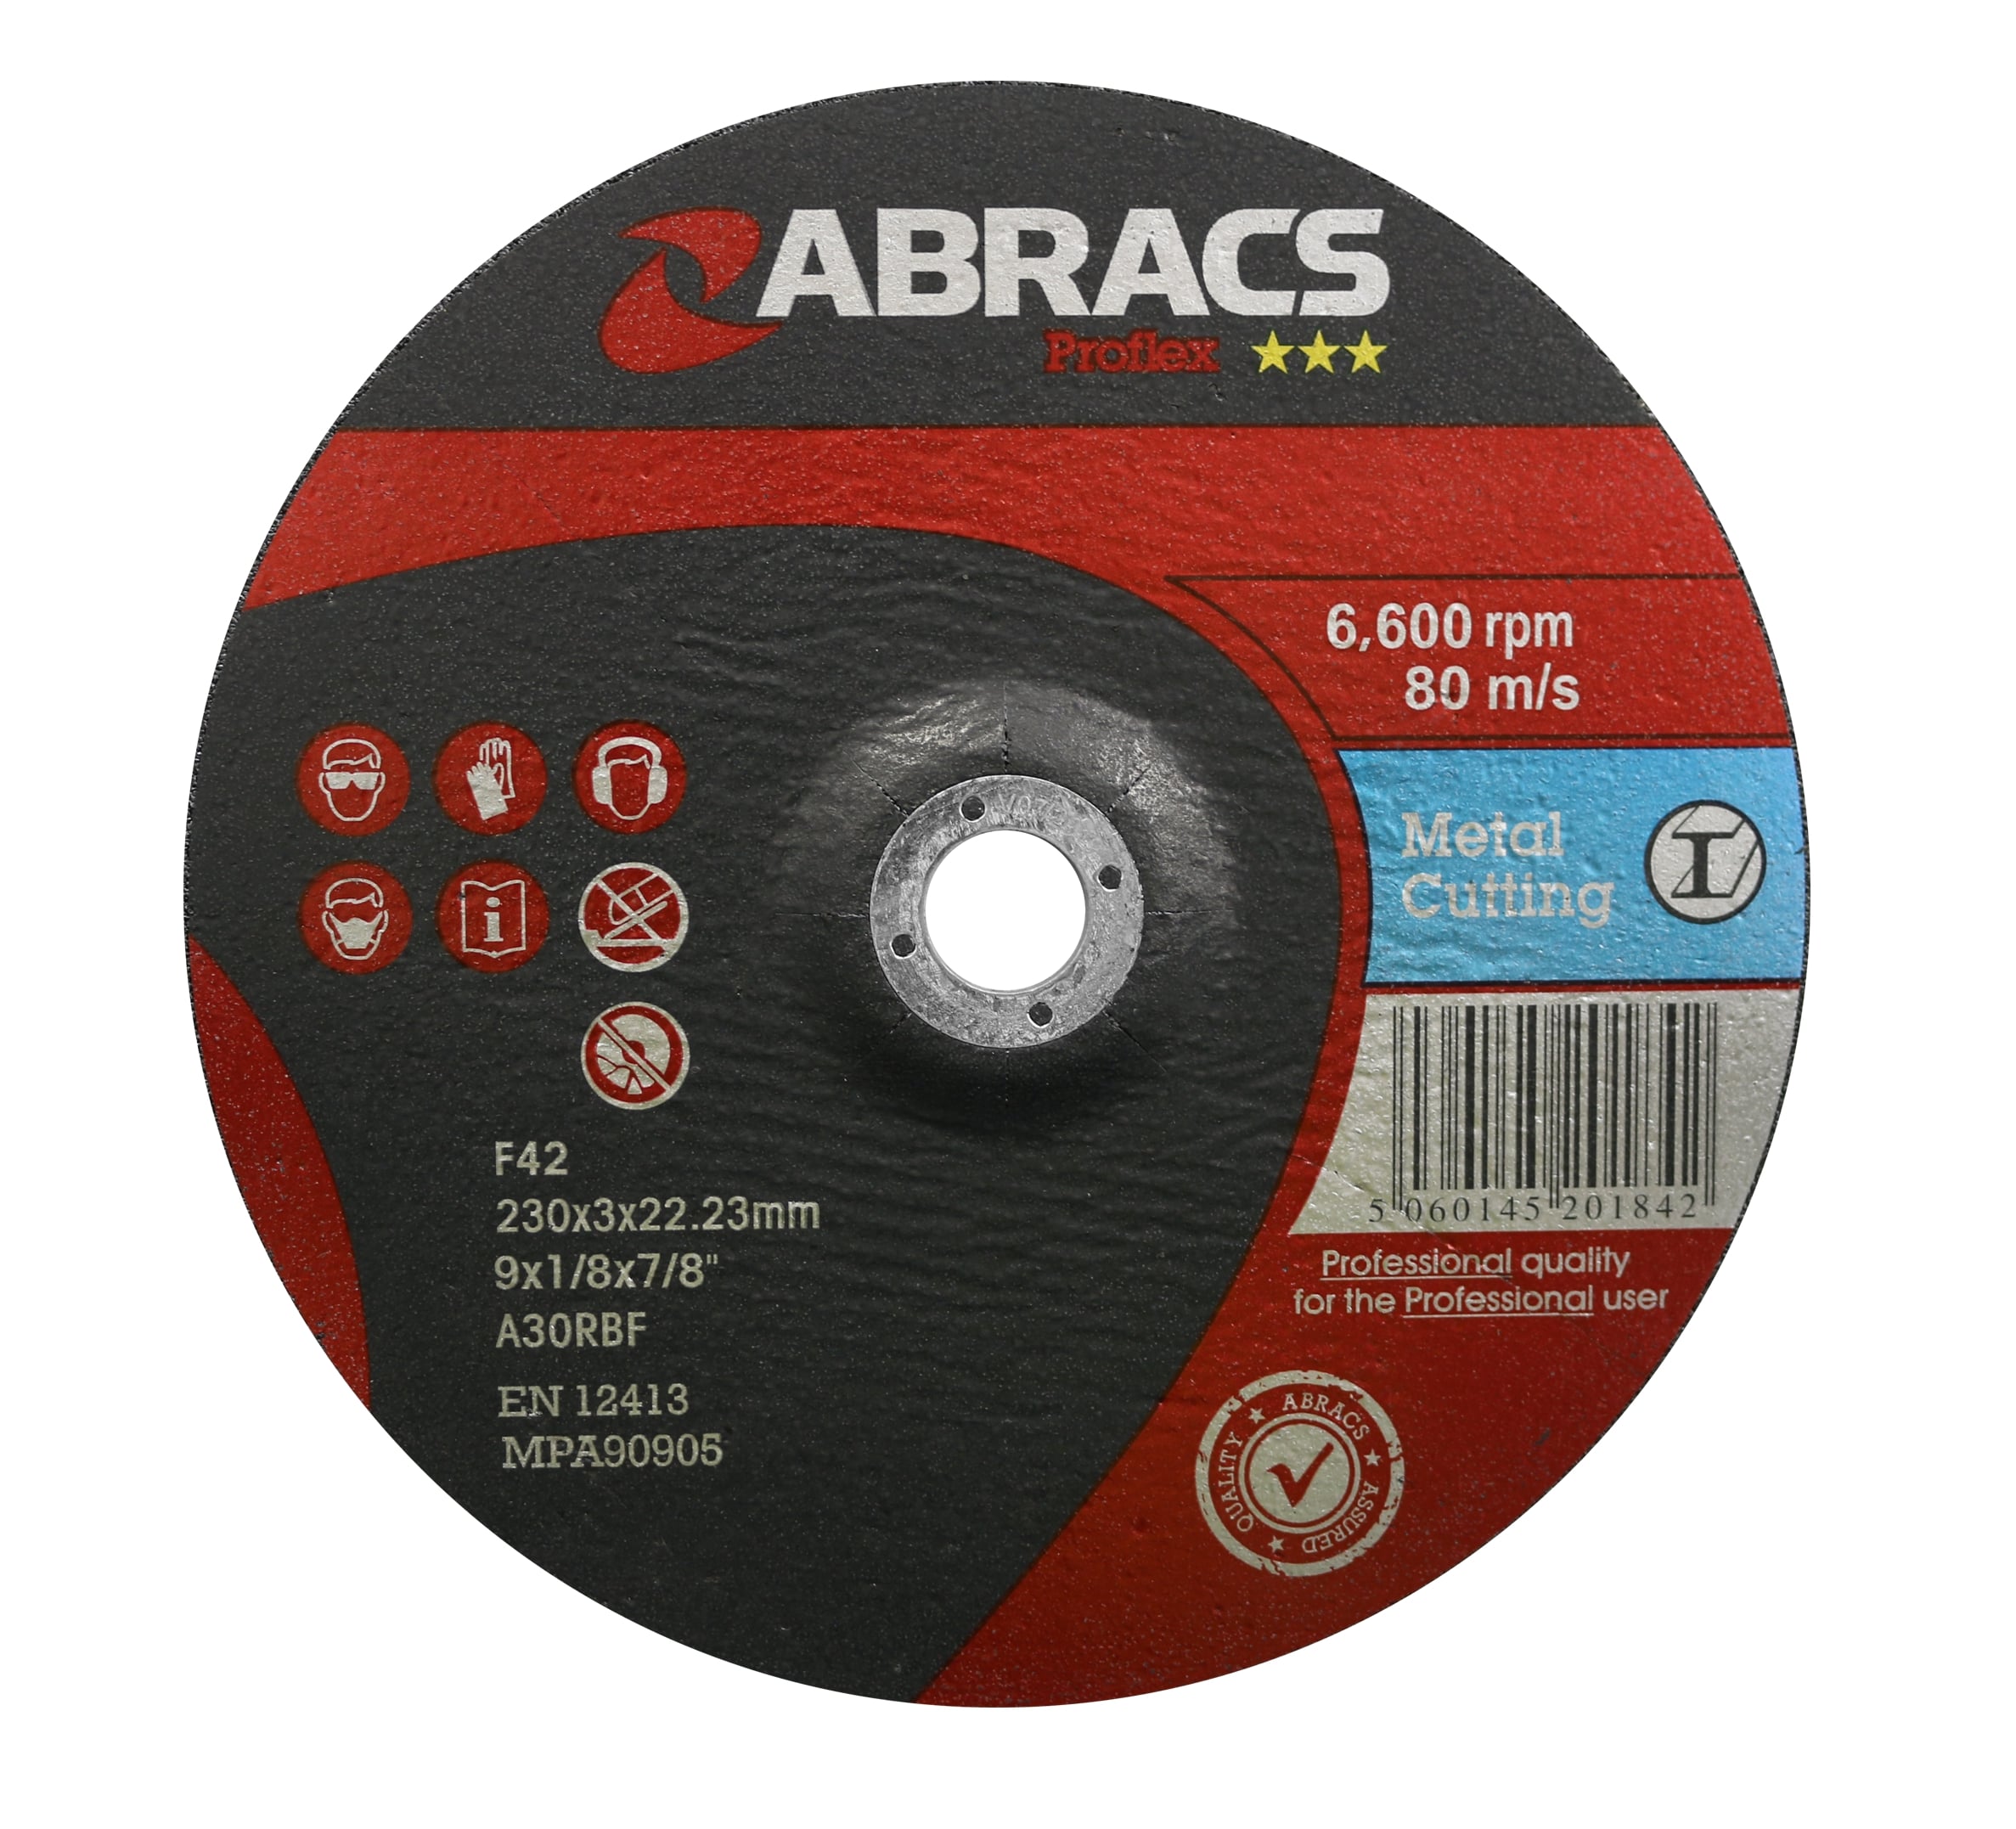 Abracs  PROFLEX 230mm x 3mm x 22mm DPC METAL Cutting Disc